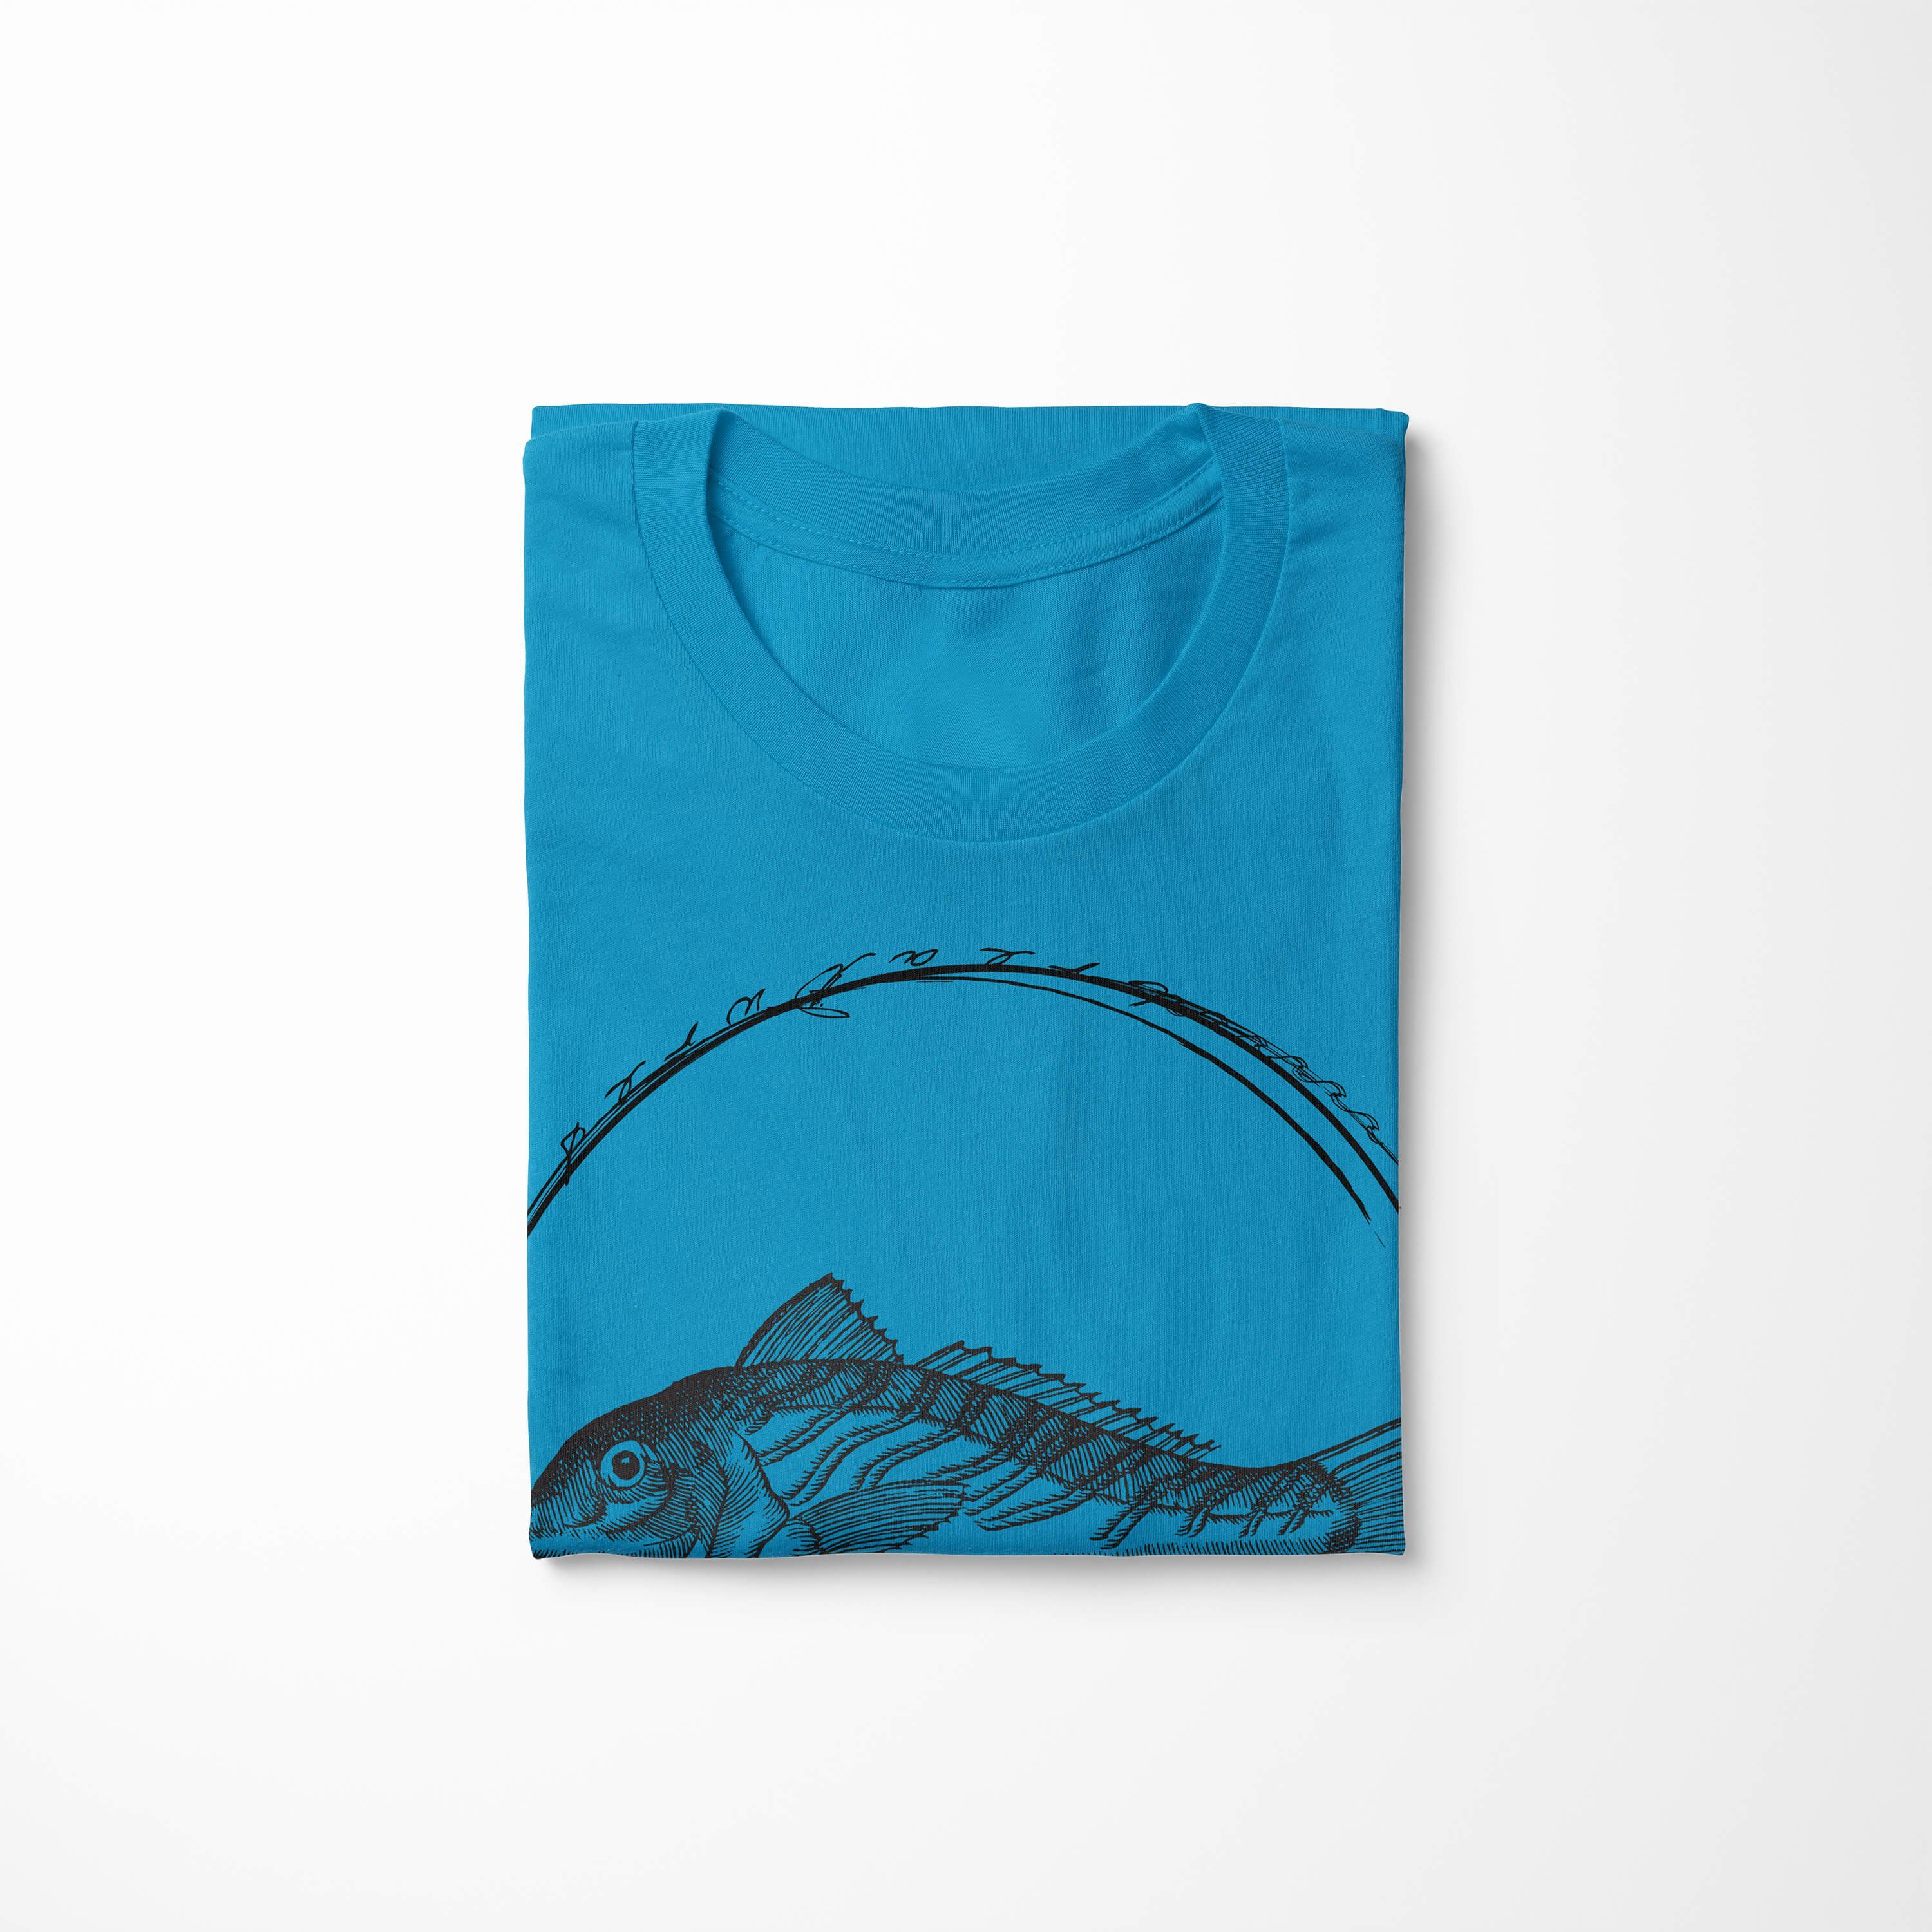 und - Fische Sea sportlicher Art Sea Sinus T-Shirt Struktur T-Shirt feine Serie: Schnitt 066 Creatures, Atoll Tiefsee /